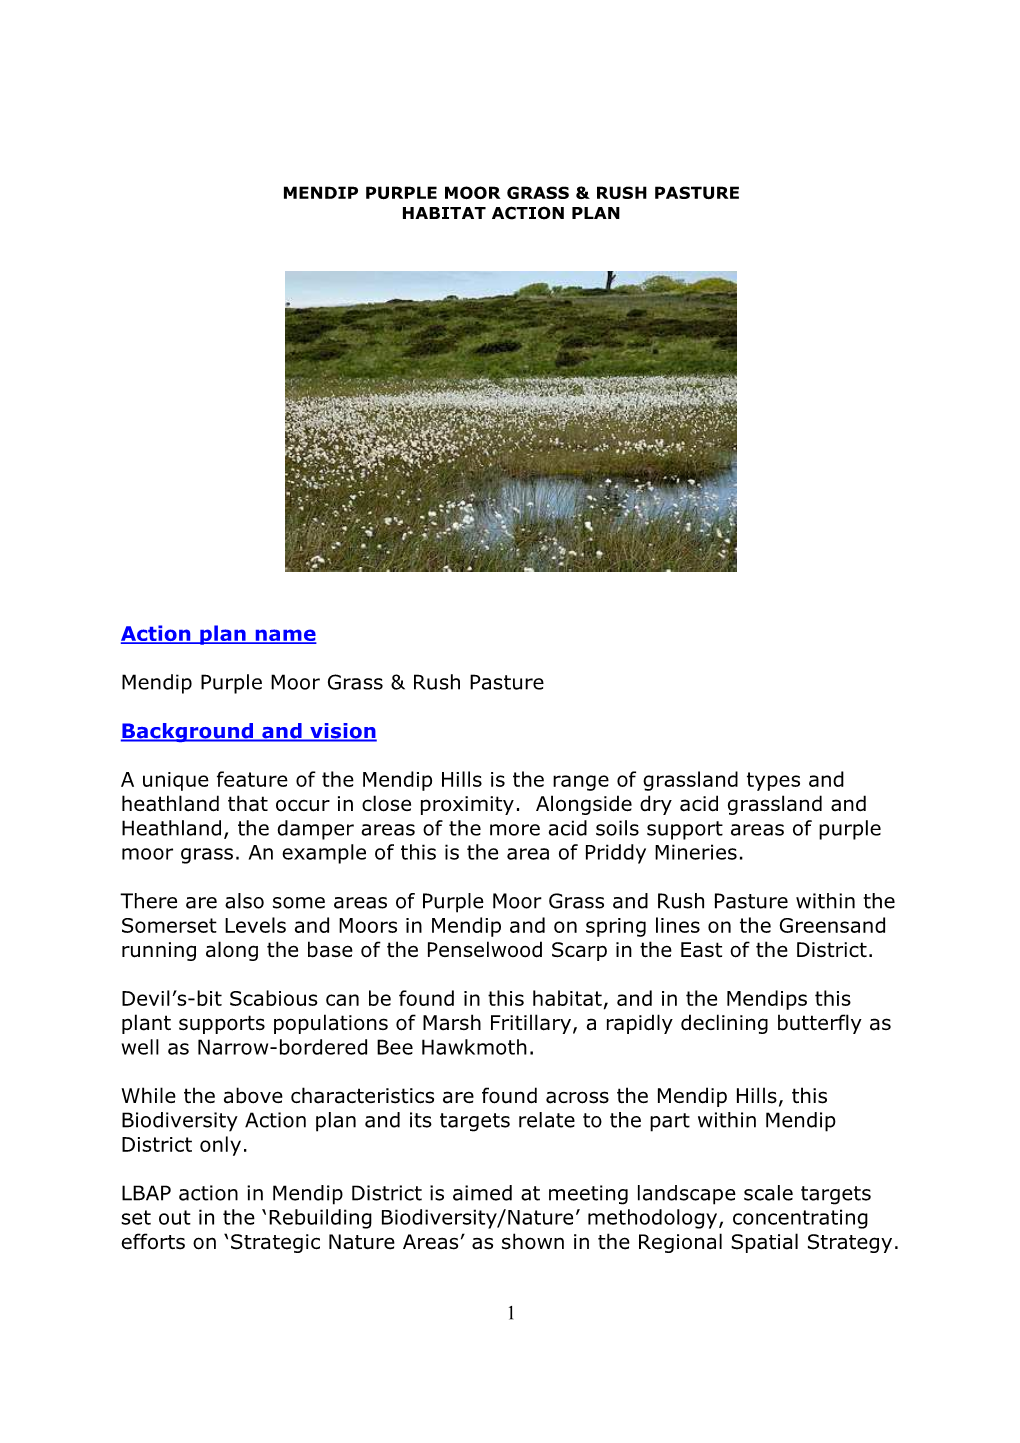 Mendip Purple Moorgrass and Rush Pasture